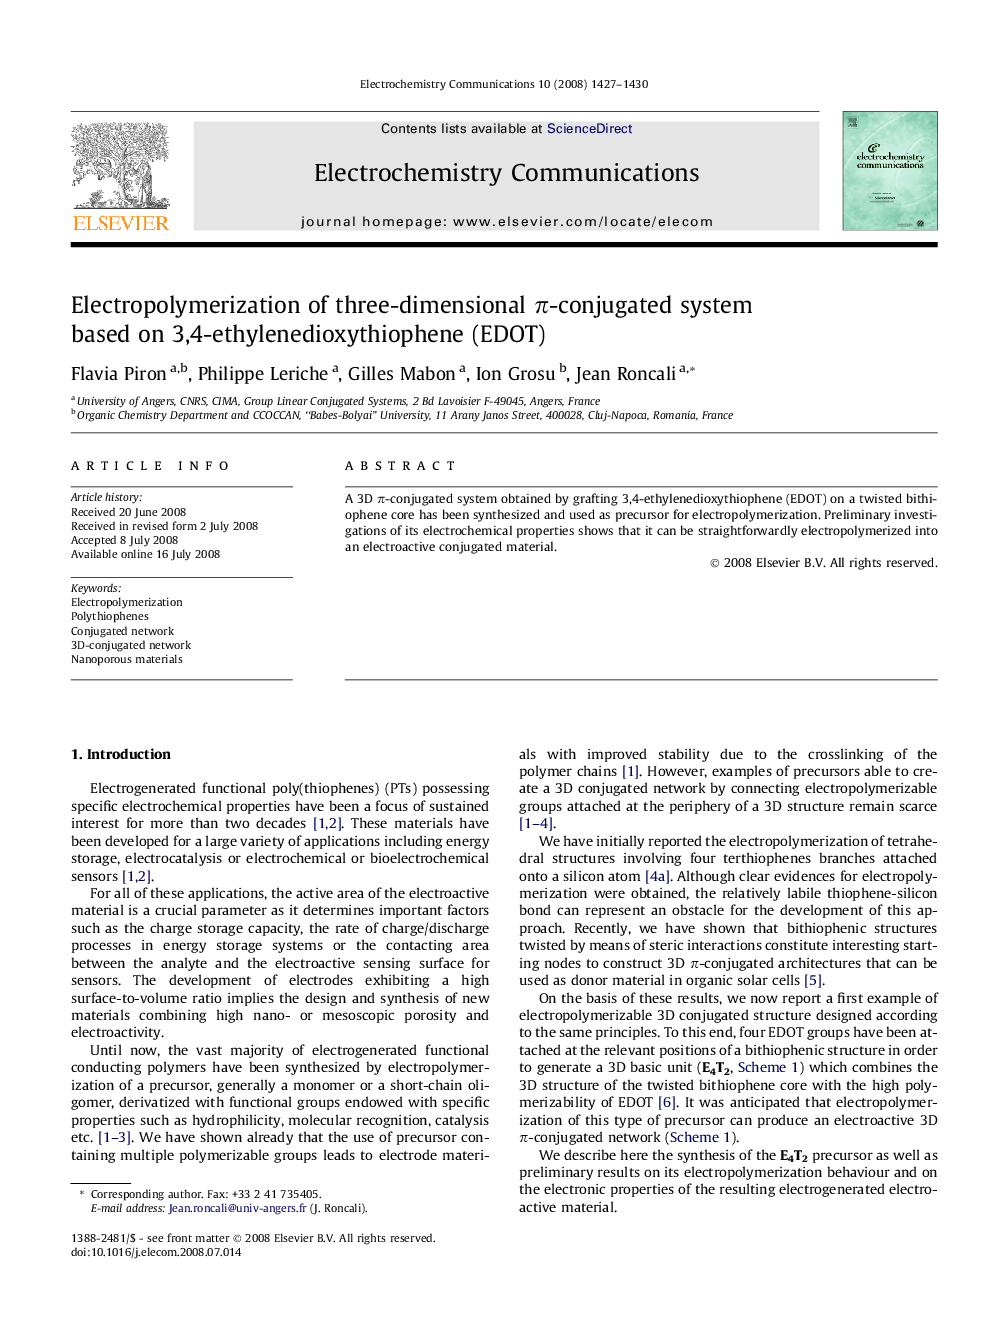 Electropolymerization of three-dimensional π-conjugated system based on 3,4-ethylenedioxythiophene (EDOT)